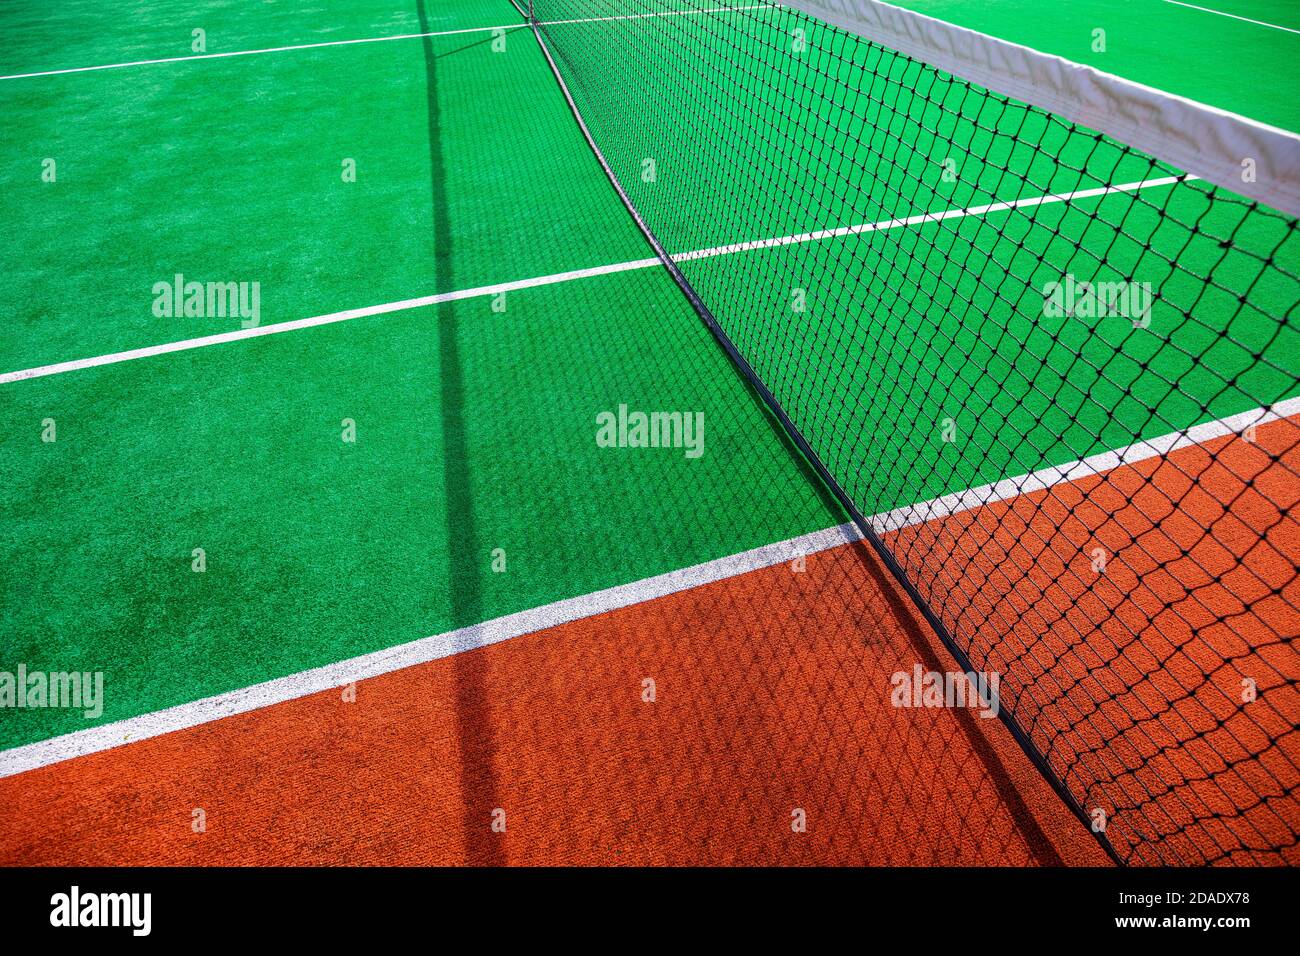 Tennisplatz. Tennisplätze machen ein Interessantes Muster. Abstrakt Sommer Outdoor-Sport, Freizeit Hintergrund, Tennisplatz an einem sonnigen Tag Stockfoto